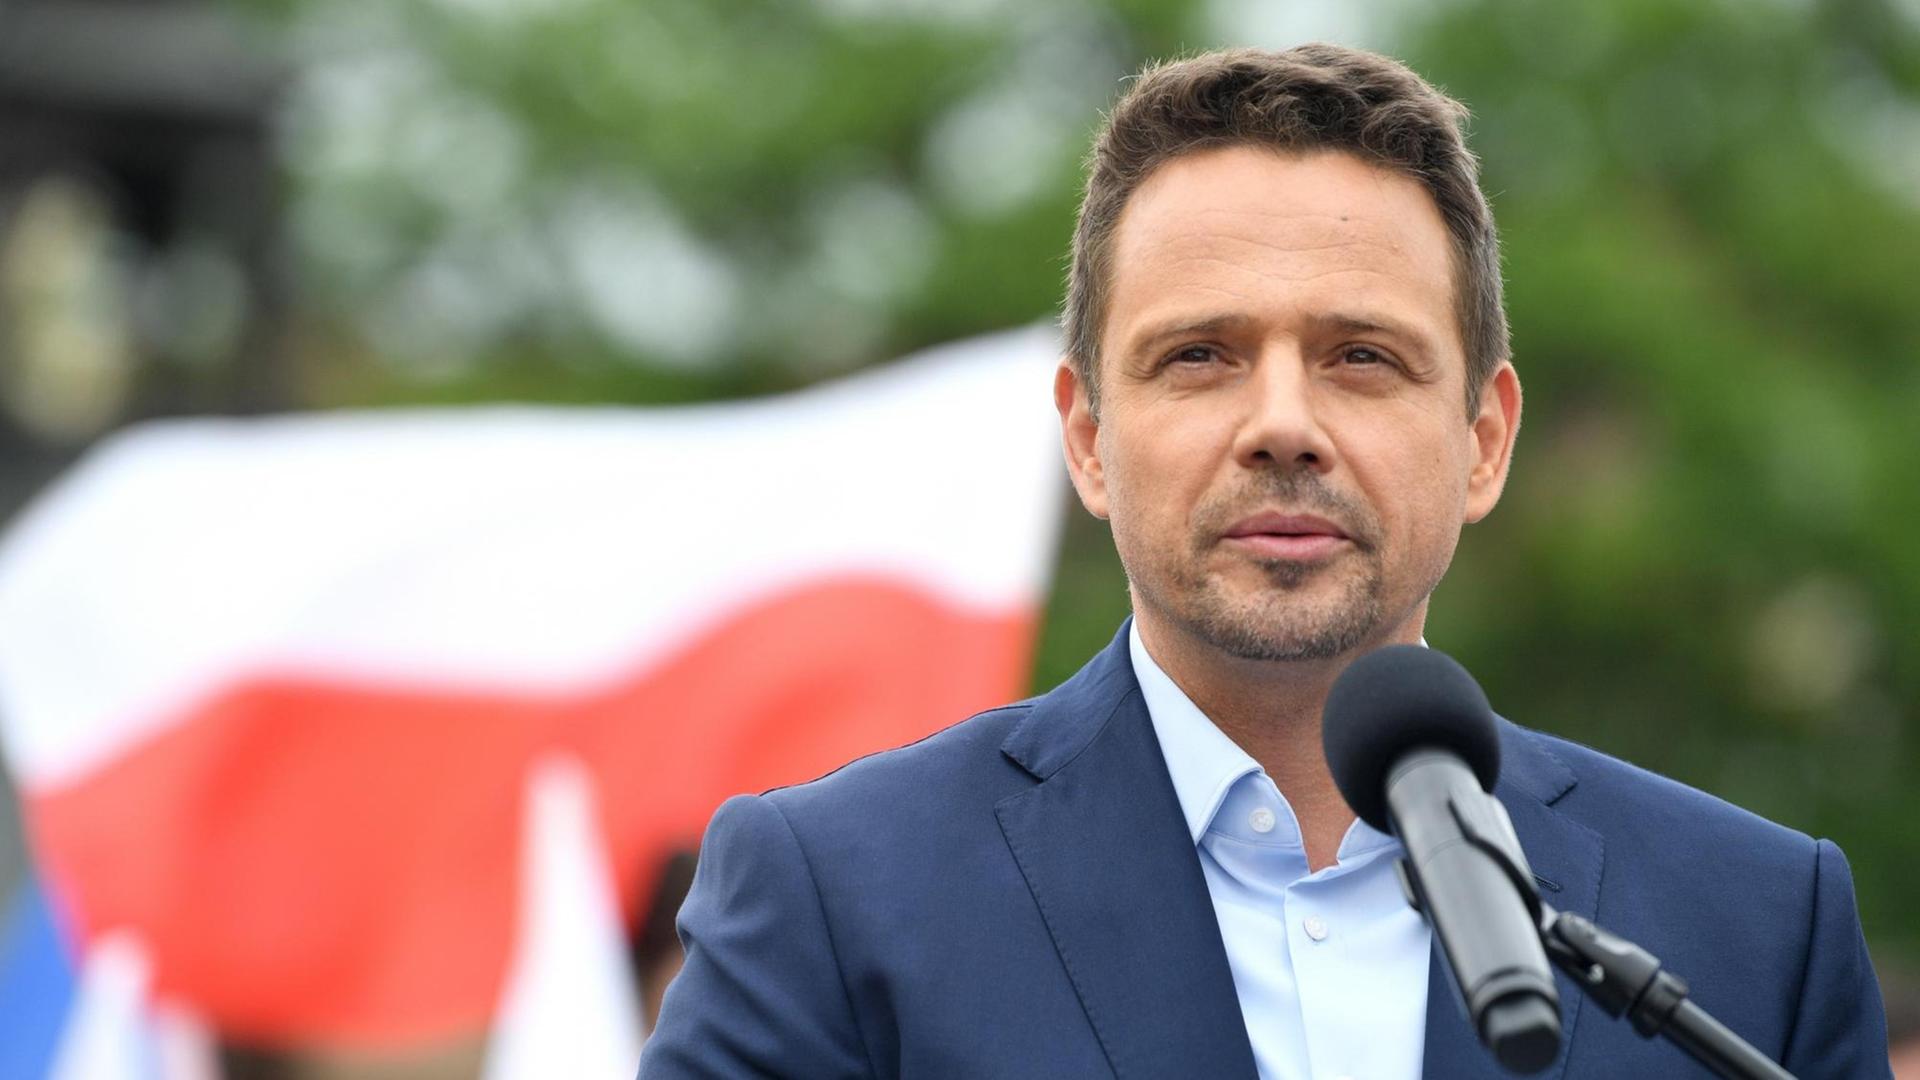 Rafał Trzaskowski, Bürgermeister von Warschau und liberaler Präsidentschaftskandidat, im Juni 2020